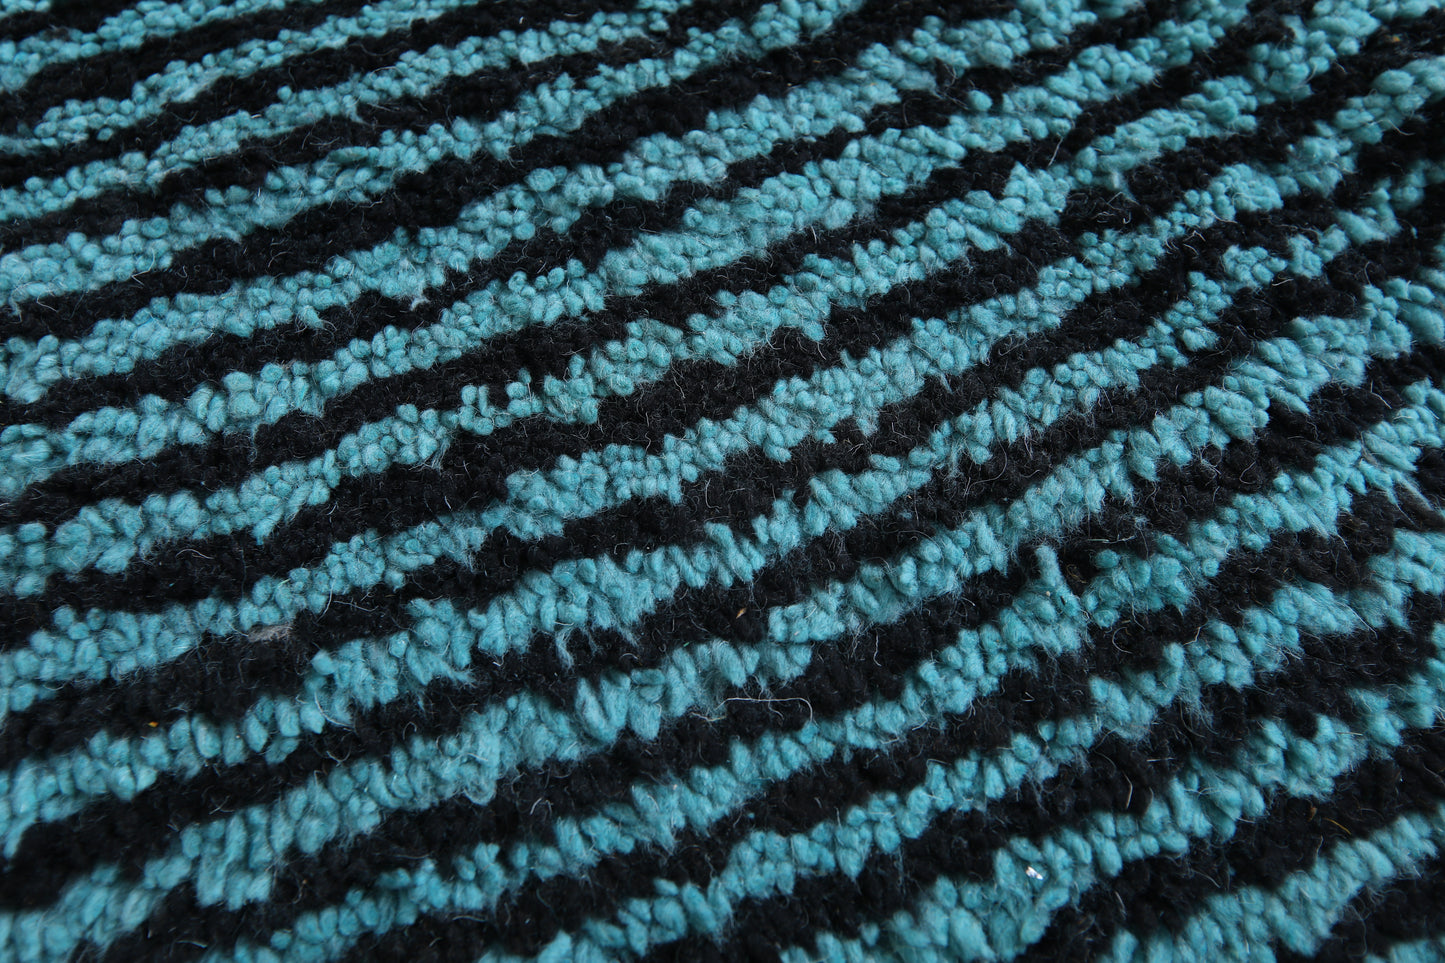 Moroccan Green rug - Moroccan rug - Moroccan carpet